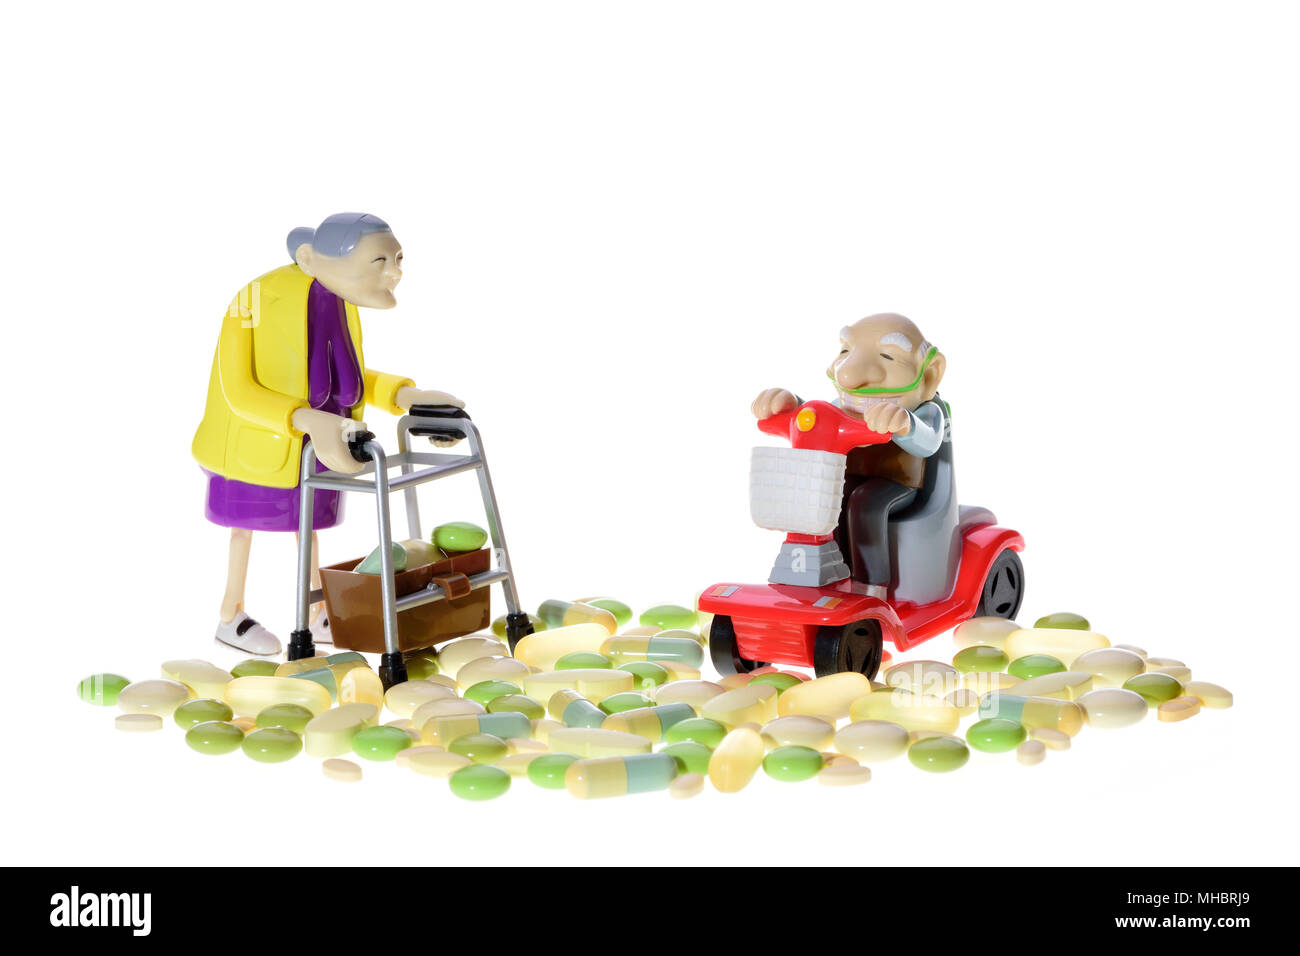 Las cifras, los ancianos con silla de ruedas y walker entre diferentes pastillas, símbolo, fondo blanco. Foto de stock